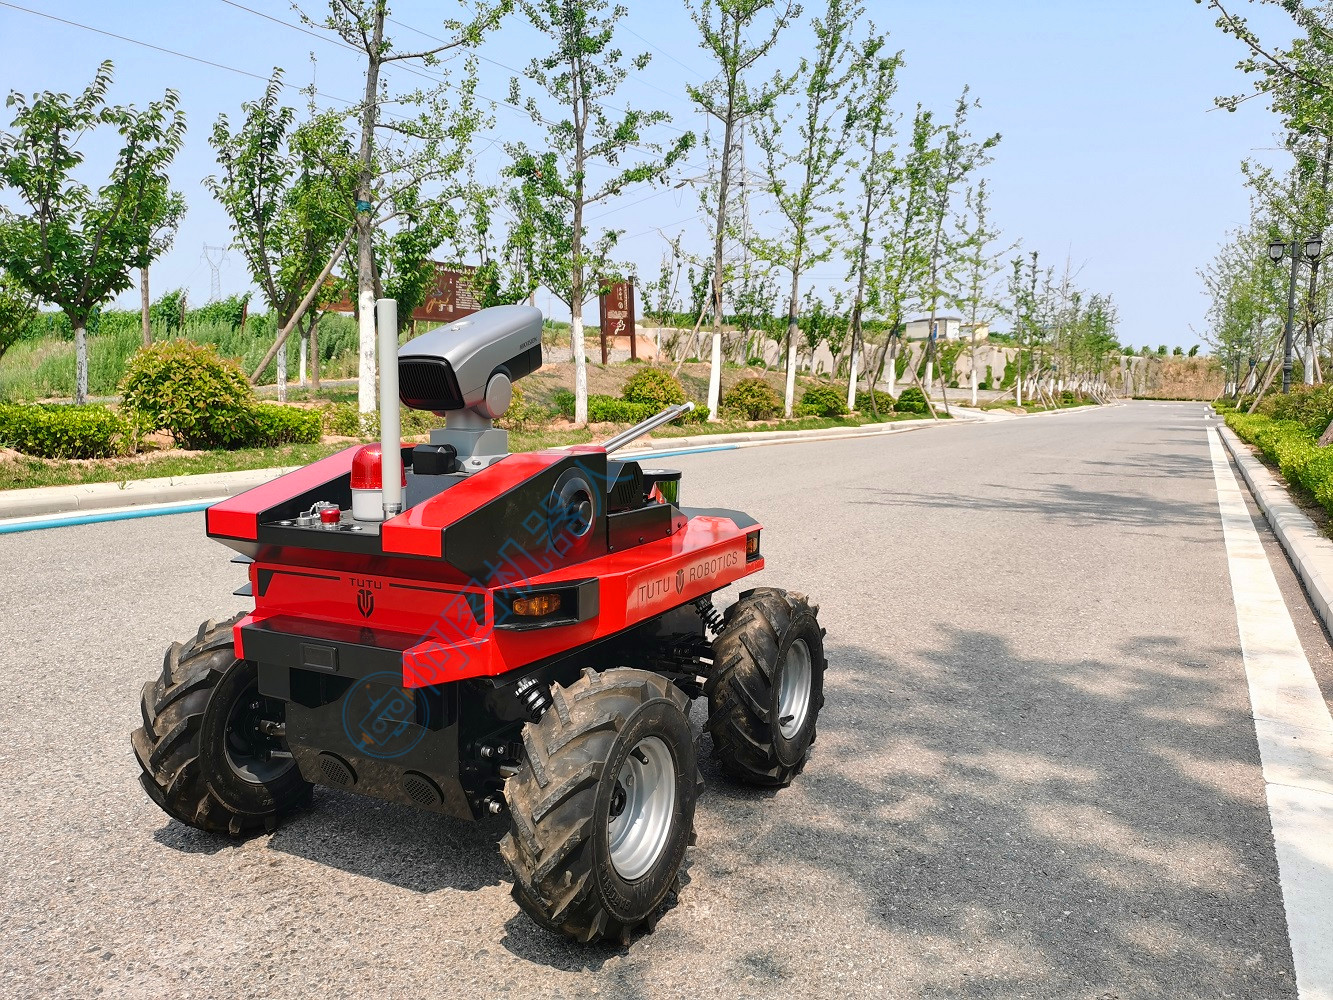 Robot de patrulla de seguridad de vigilancia con IA WT1000 para exteriores con sistema de defensa fabricado en China